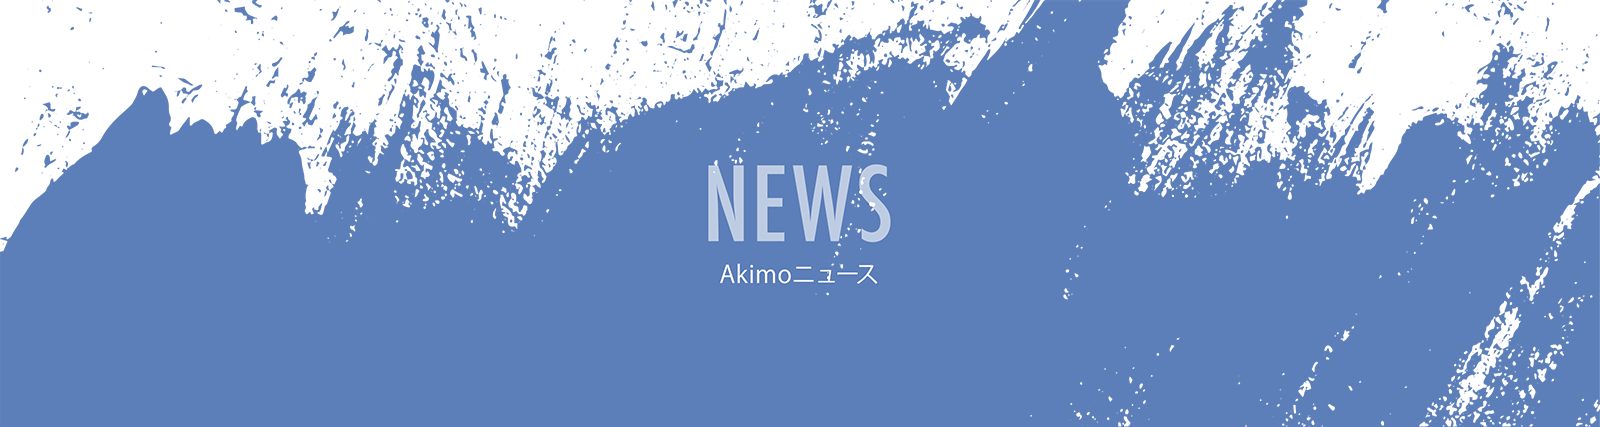 Akimoニュース